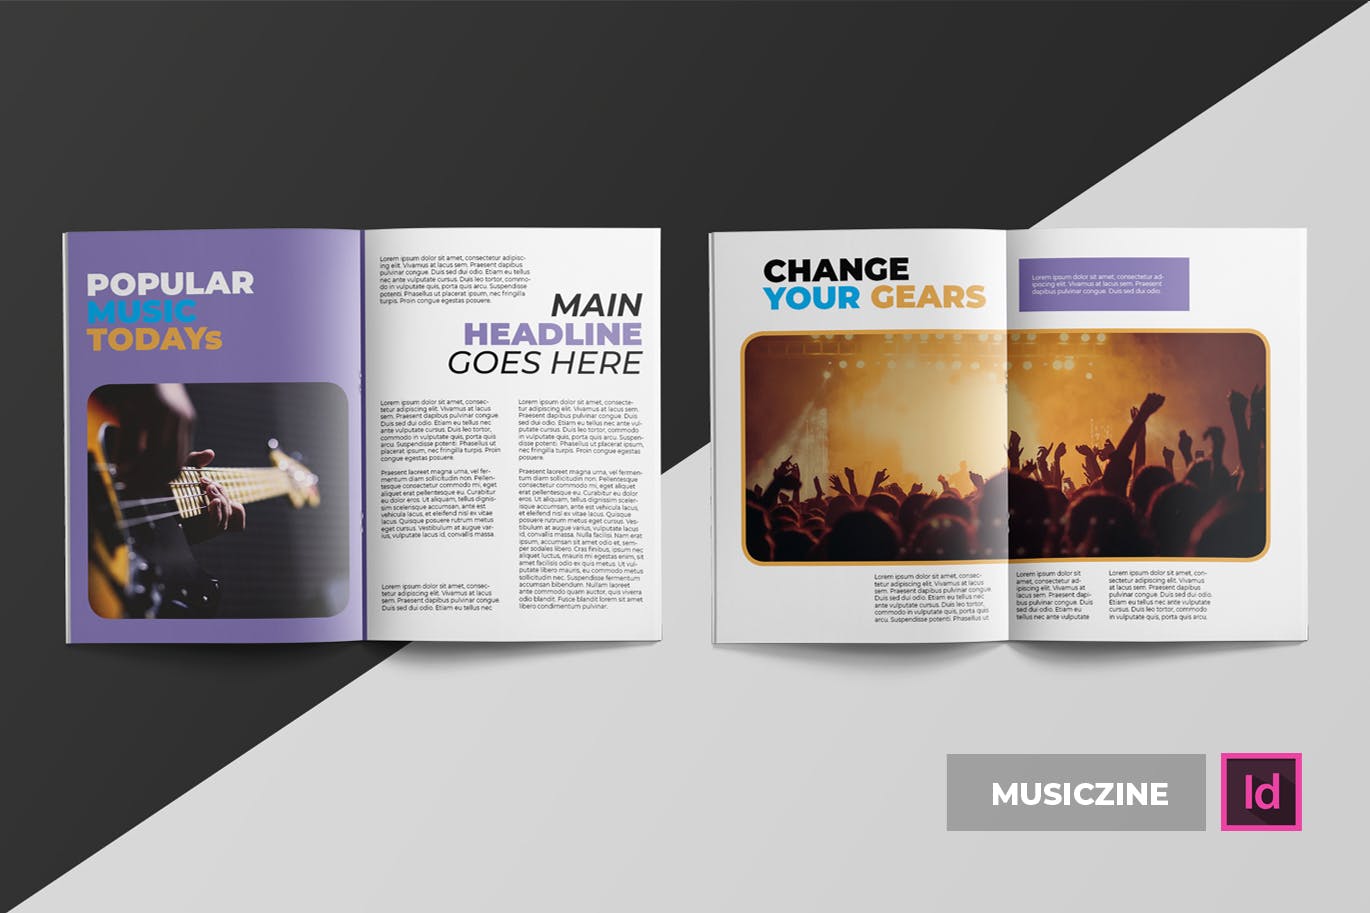 音乐主题专业蚂蚁素材精选杂志排版设计INDD模板 Musiczine | Magazine Template插图(2)